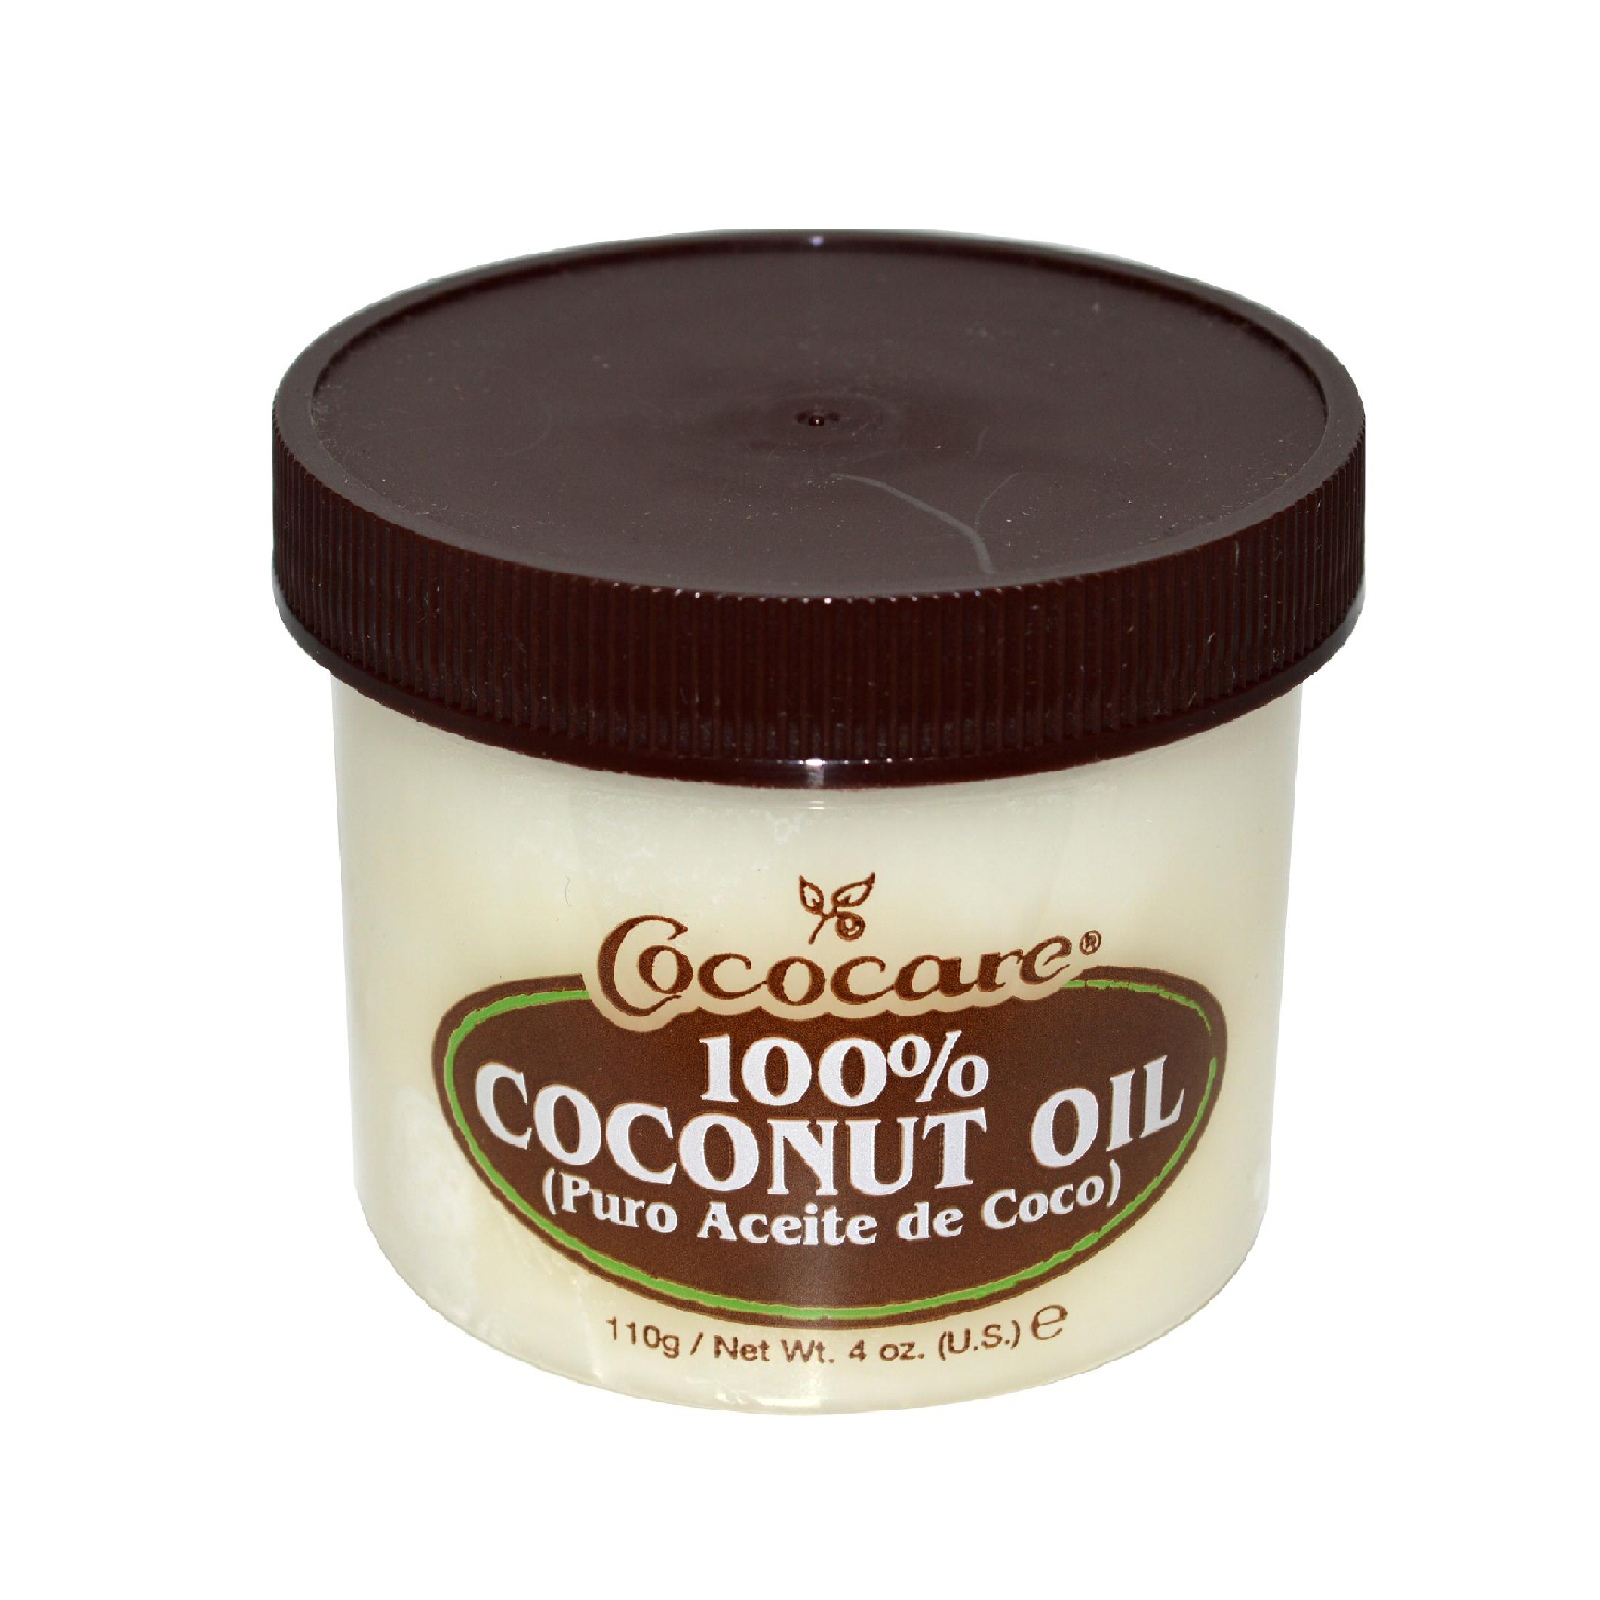 Кокосовое масло 100%, Cococare (198 г)